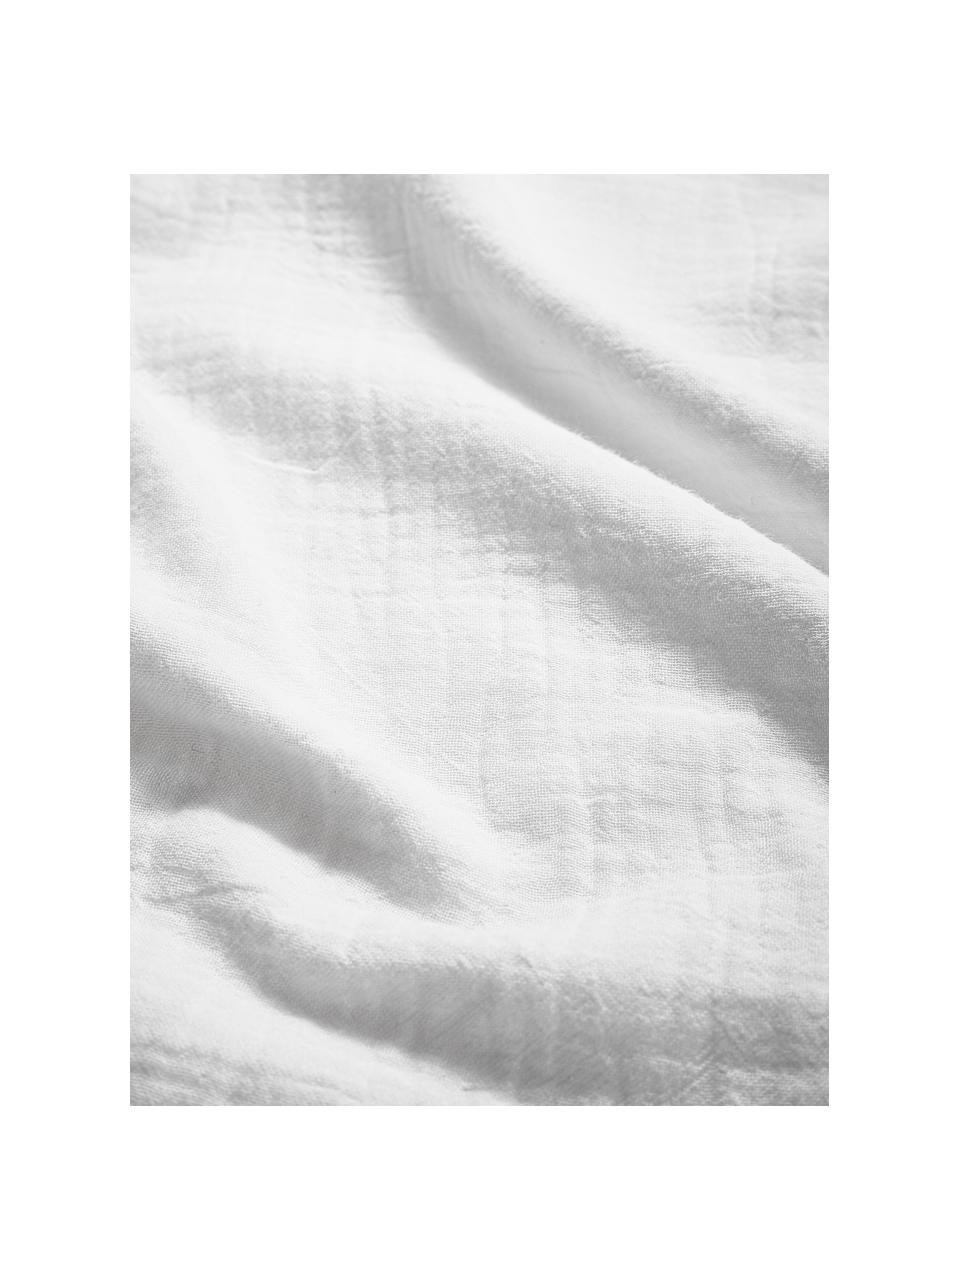 Musselin-Bettdeckenbezug Odile, Webart: Musselin Fadendichte 200 , Weiß, B 135 x L 200 cm